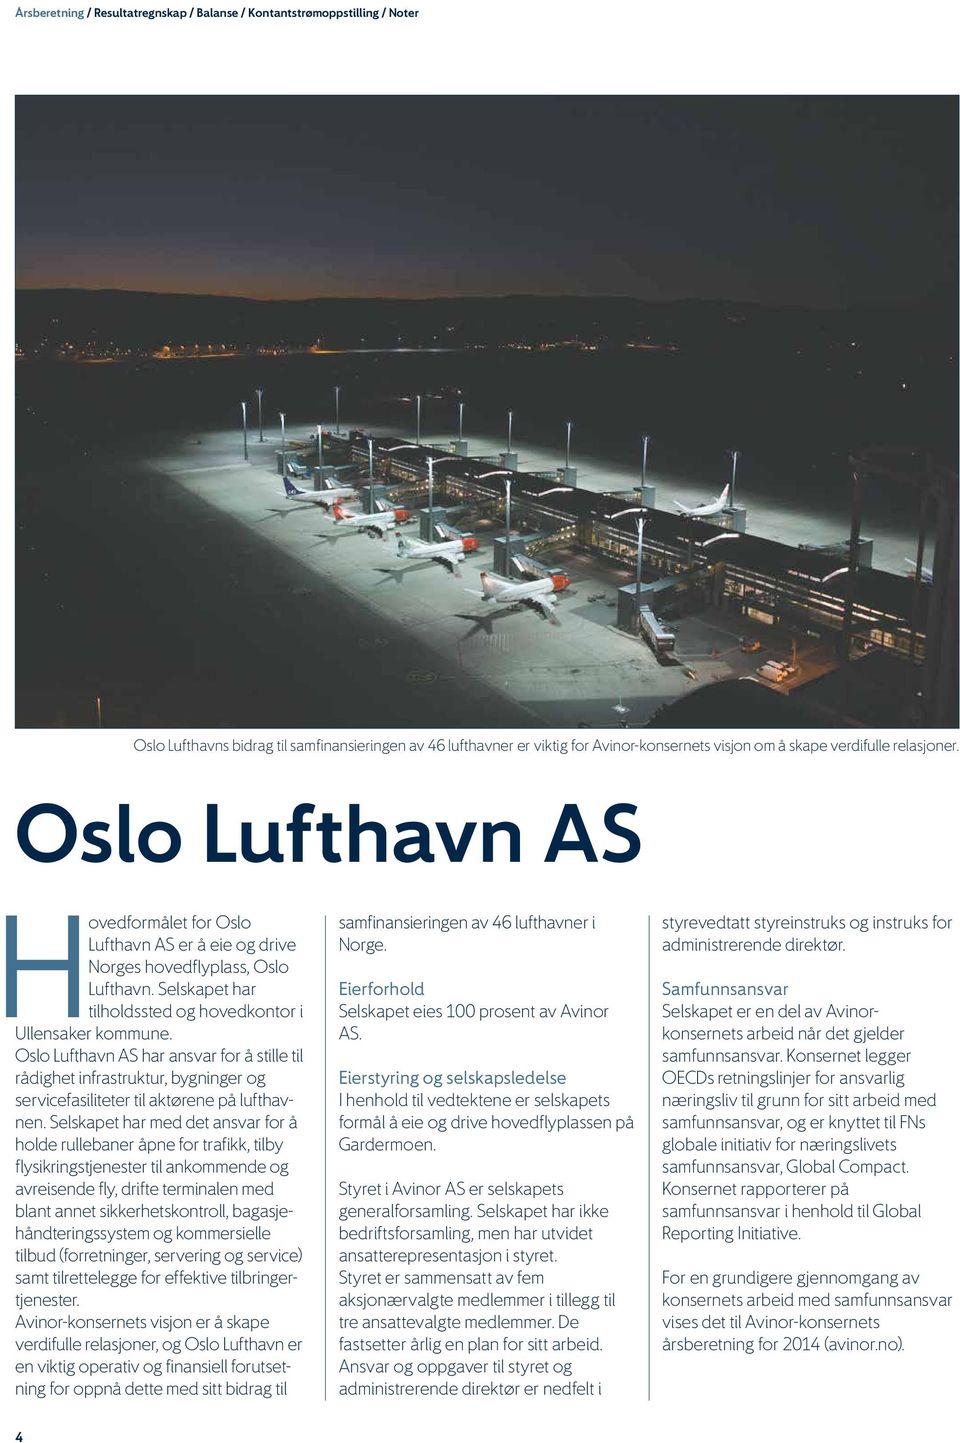 Oslo Lufthavn AS har ansvar for å stille til rådighet infrastruktur, bygninger og servicefasiliteter til aktørene på lufthavnen.